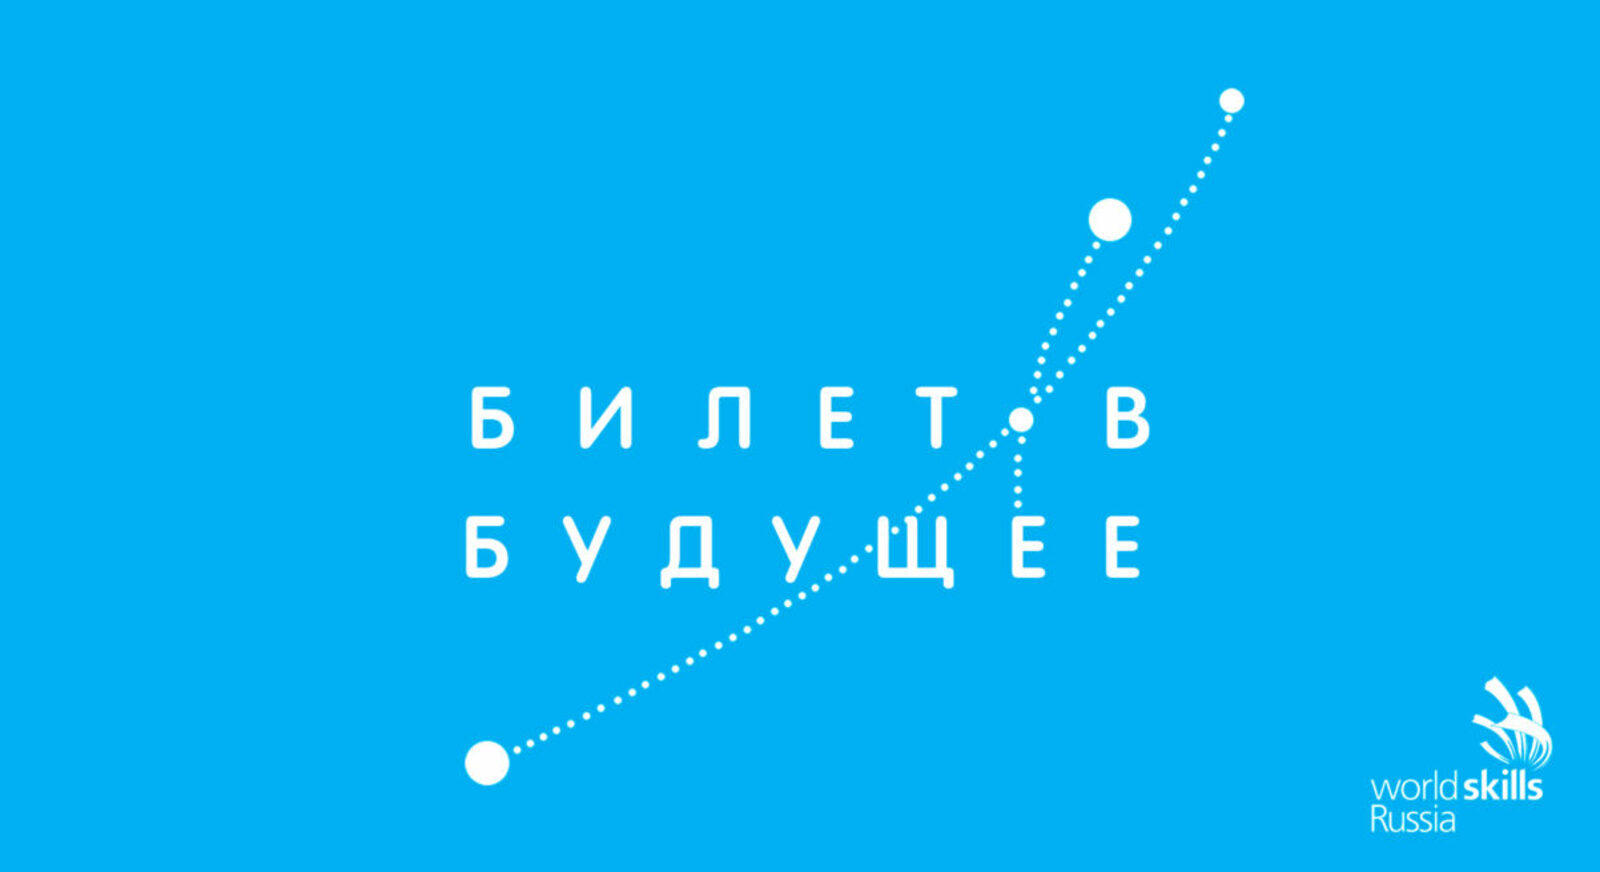 15 тысяч школьников Республики Башкортостан станут участниками проекта «Билет в будущее»